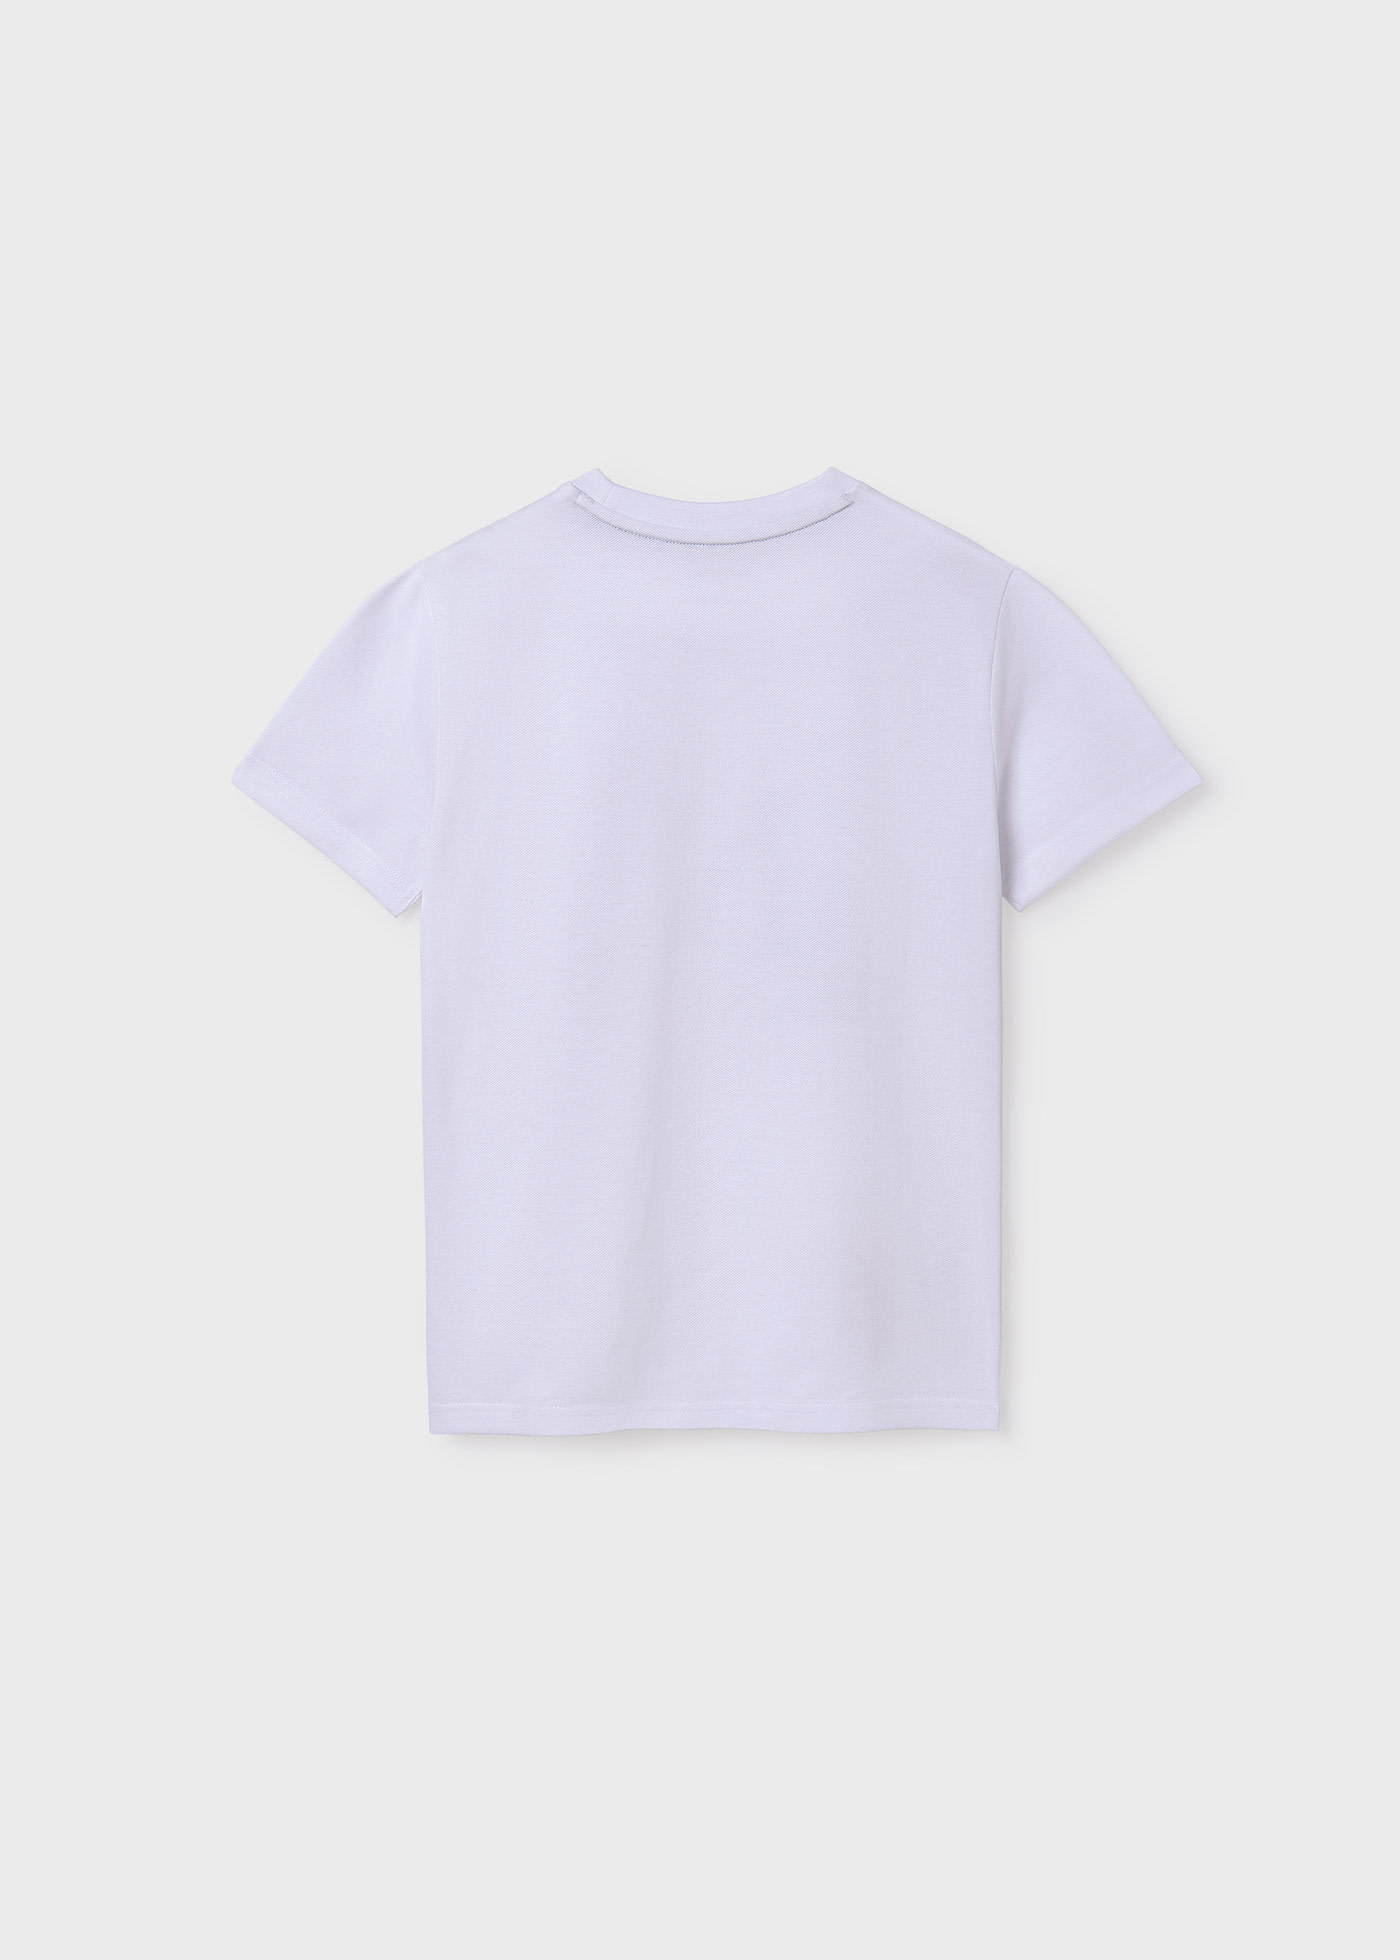 Camiseta semi básica Better Cotton chico